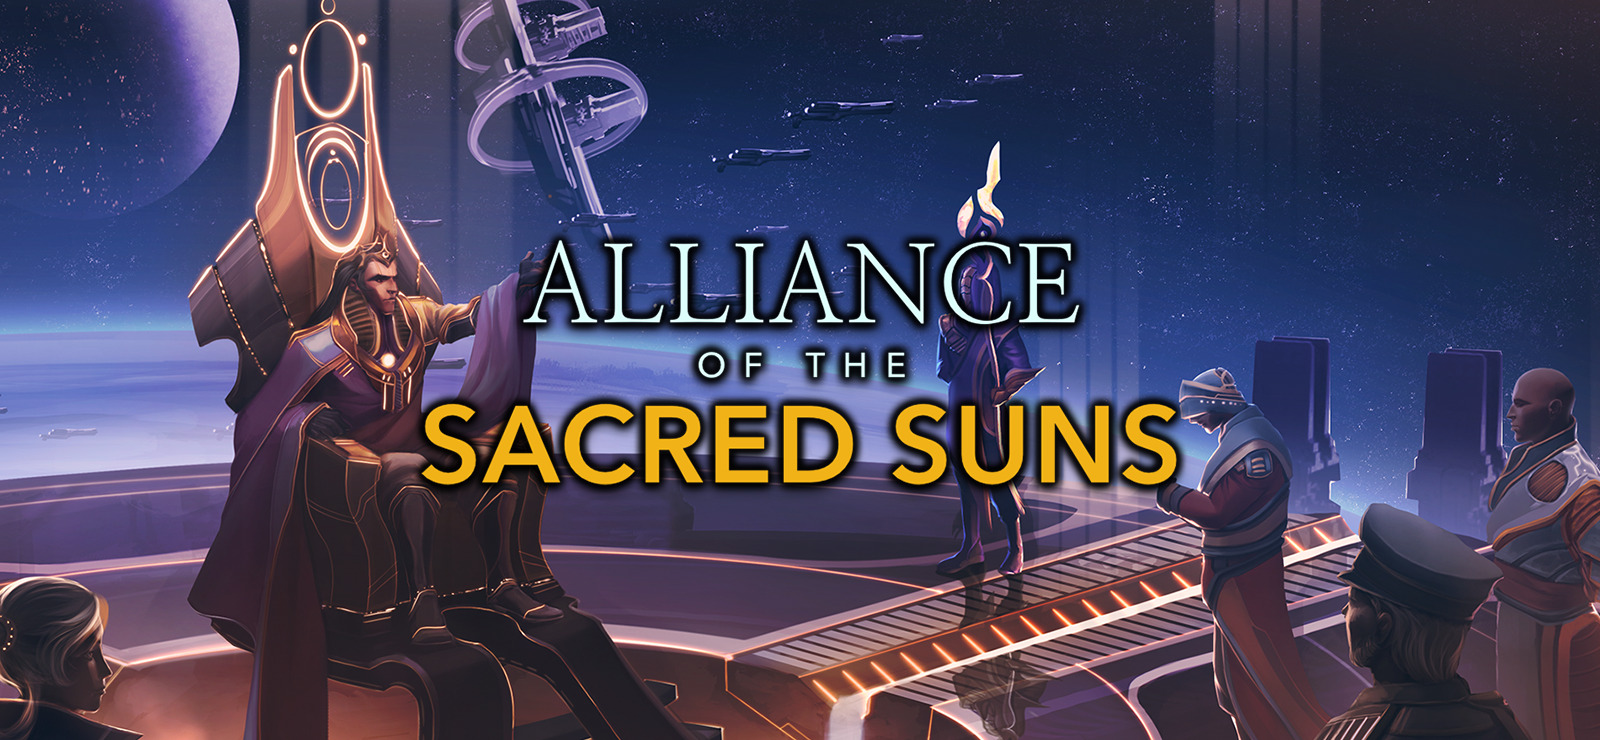 Alliance of the Sacred Suns: Bạn có đủ điều kiện để hoạt động chính trị trong không gian đế quốc